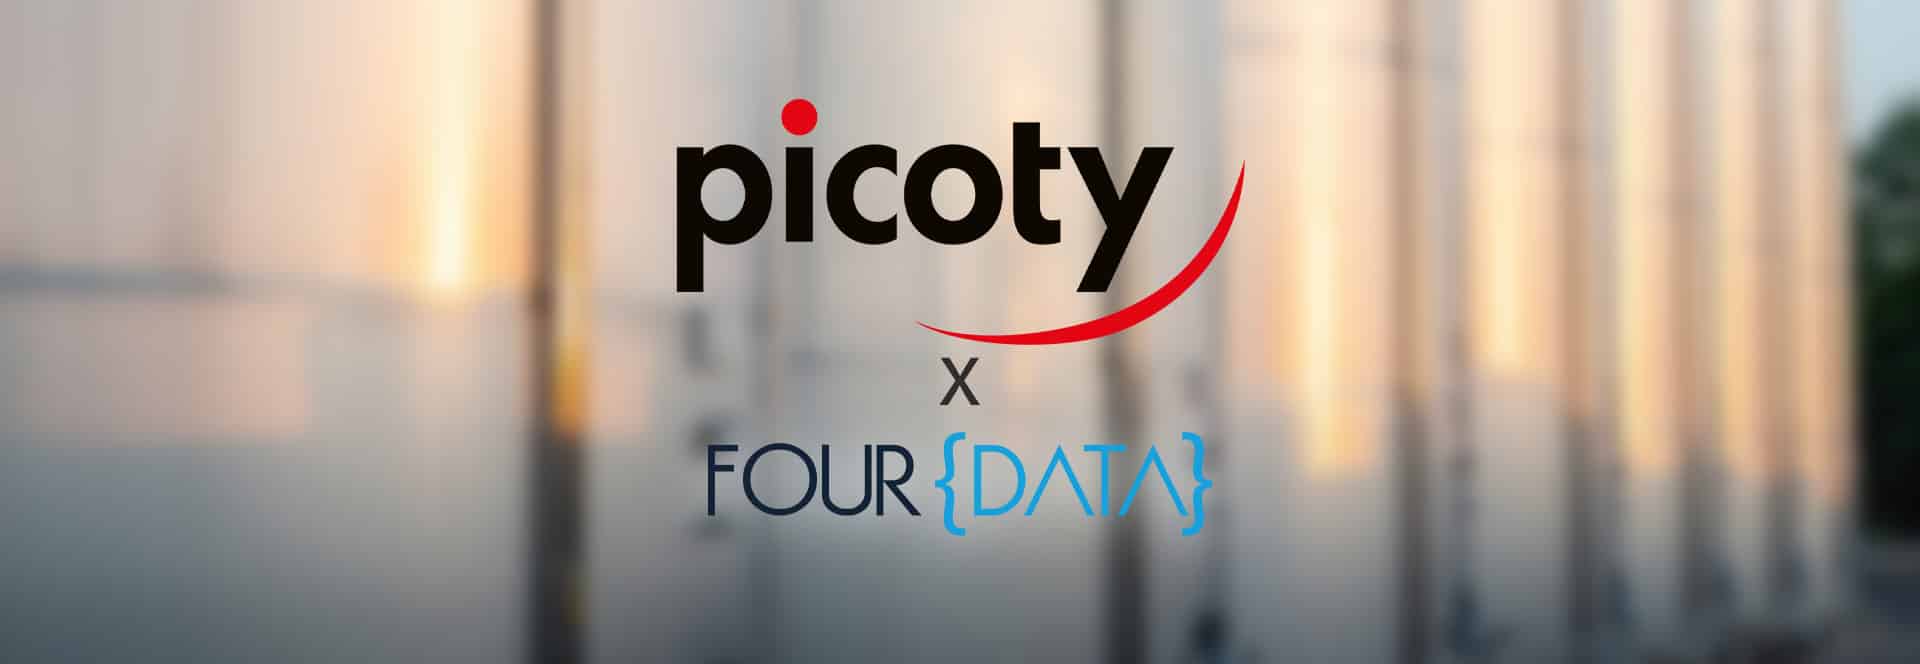 Picoty signe un partenariat avec Four Data pour développer la télémétrie auprès de ses clients